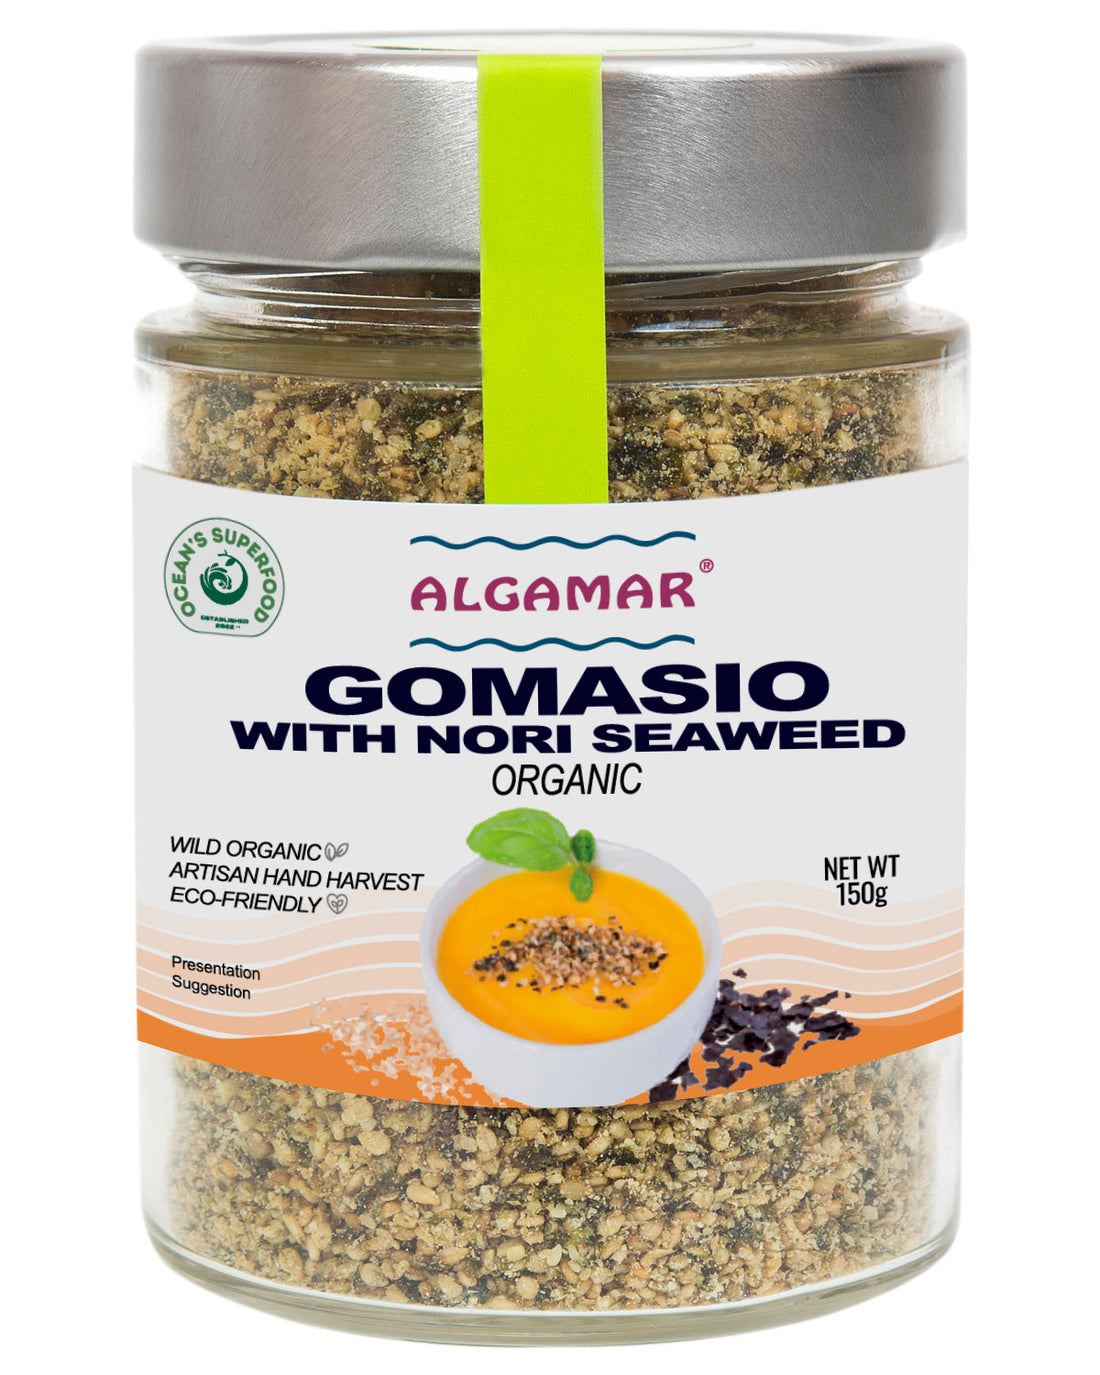 Gomasio with Nori Seaweed, Organic